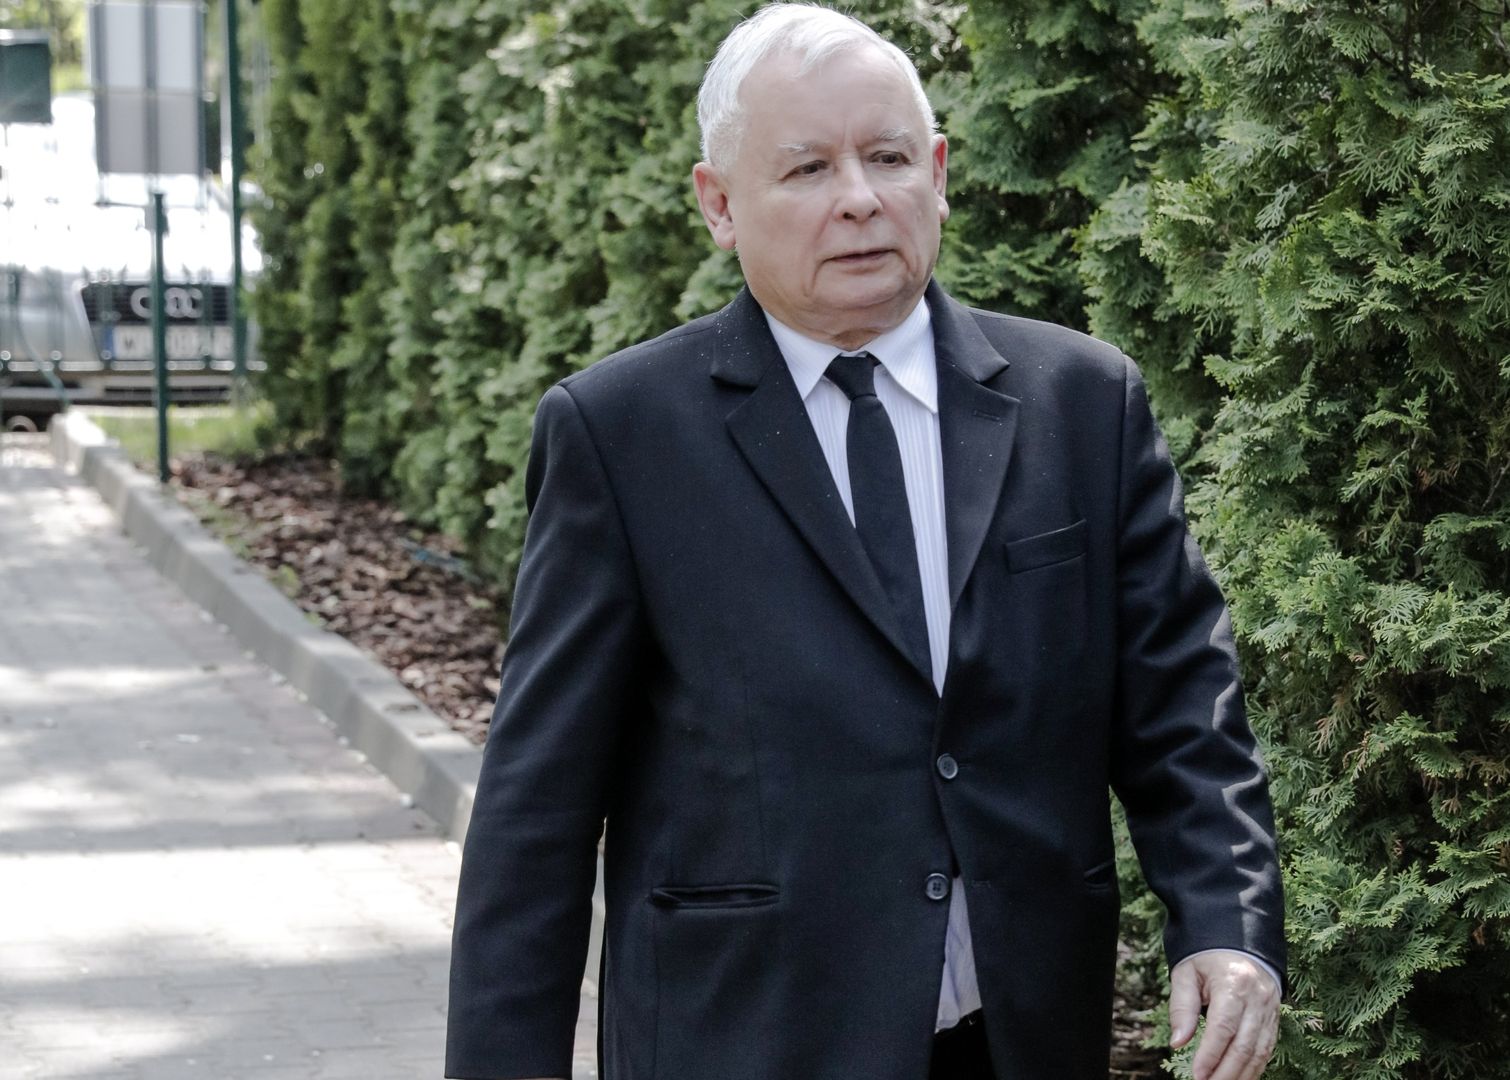 Olbrzymie zaskoczenie pod domem Kaczyńskiego. Politycy tłumaczą